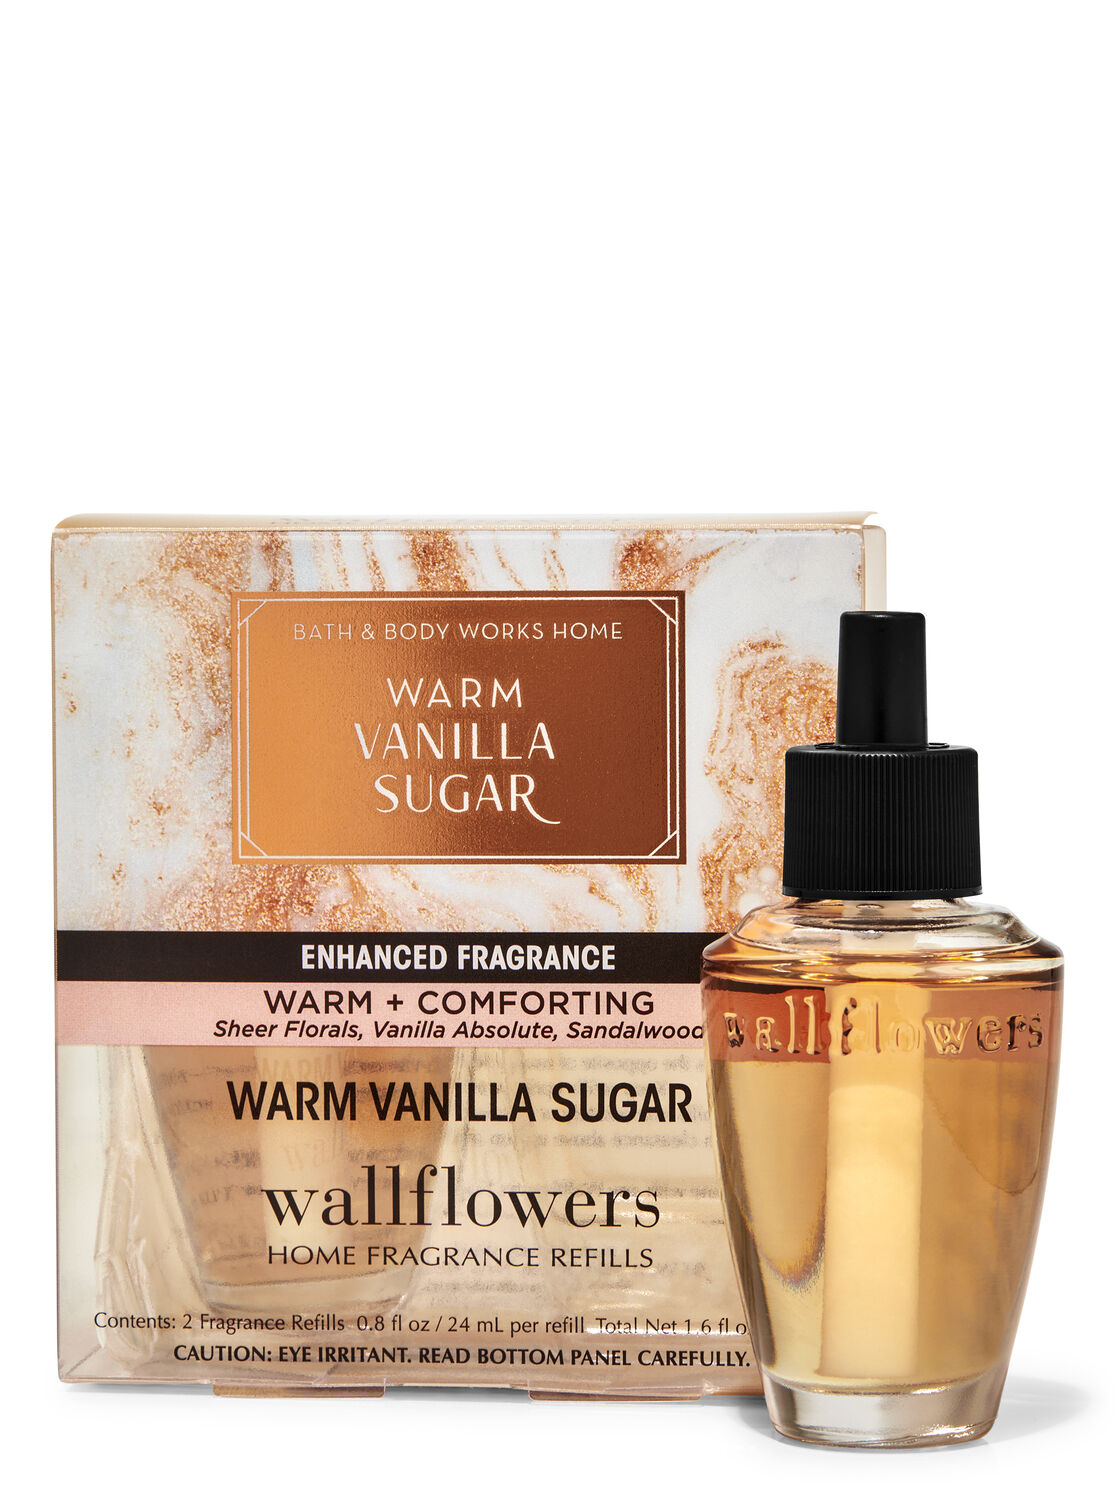 Bath and Body Works Wax Melts 2oz Warm Vanilla Sugar